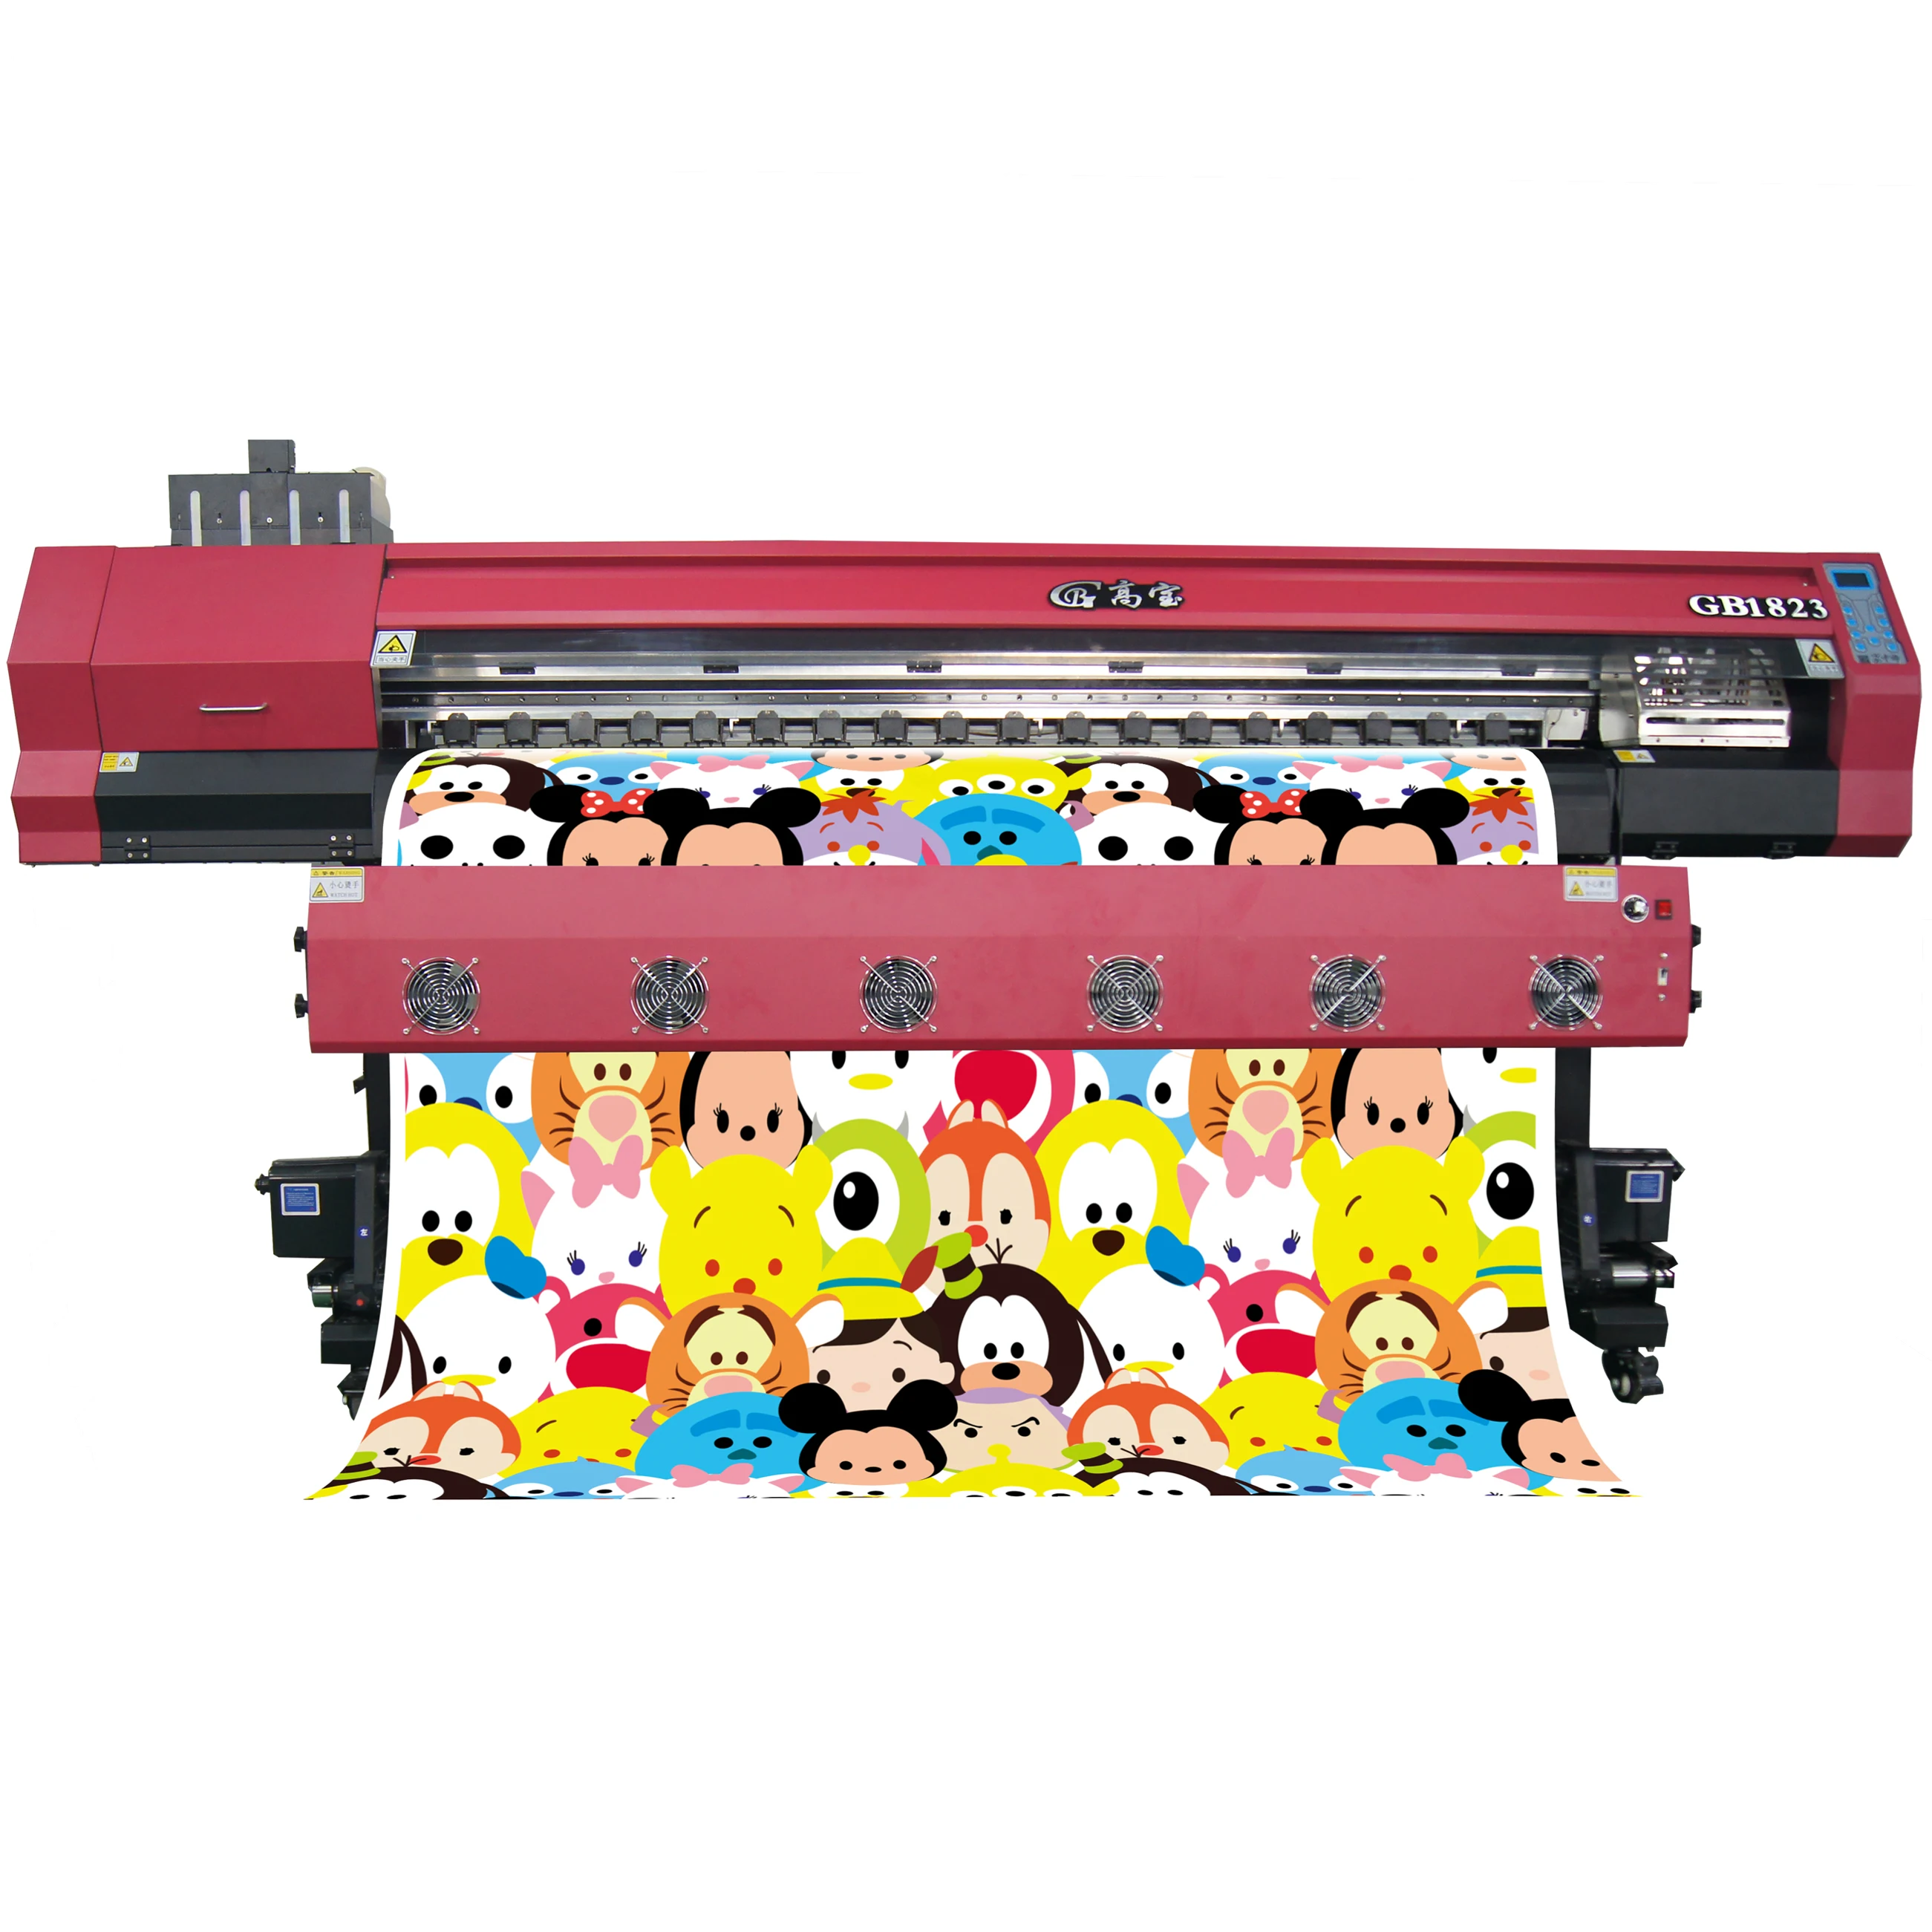 dye sublimation printer